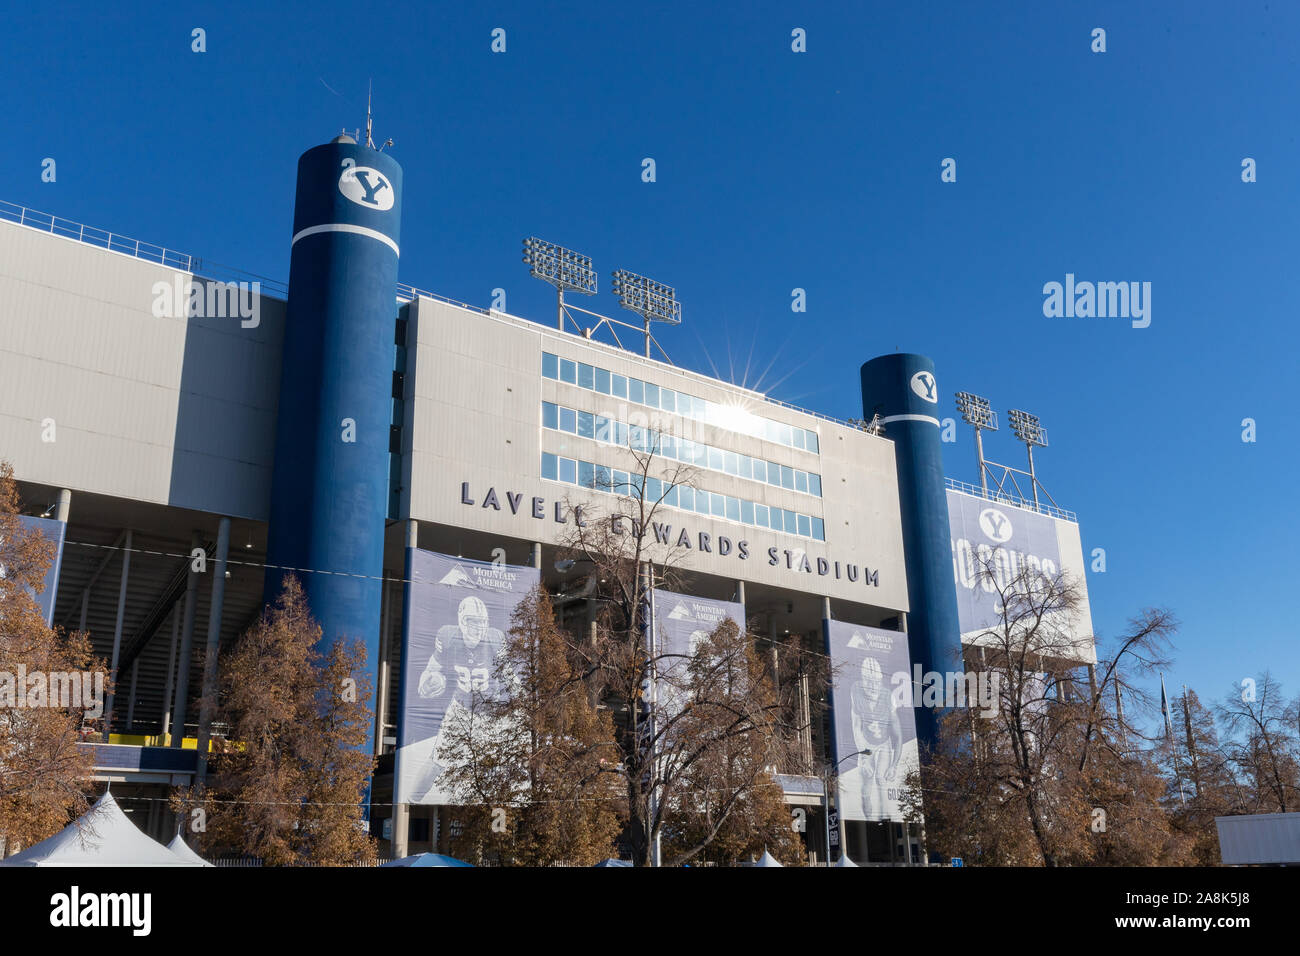 Noviembre 9, 2019 - Provo, UT, USA: Lavell Edwards Stadium en el campus de la Universidad Brigham Young, que se utiliza principalmente para el fútbol americano universitario Foto de stock